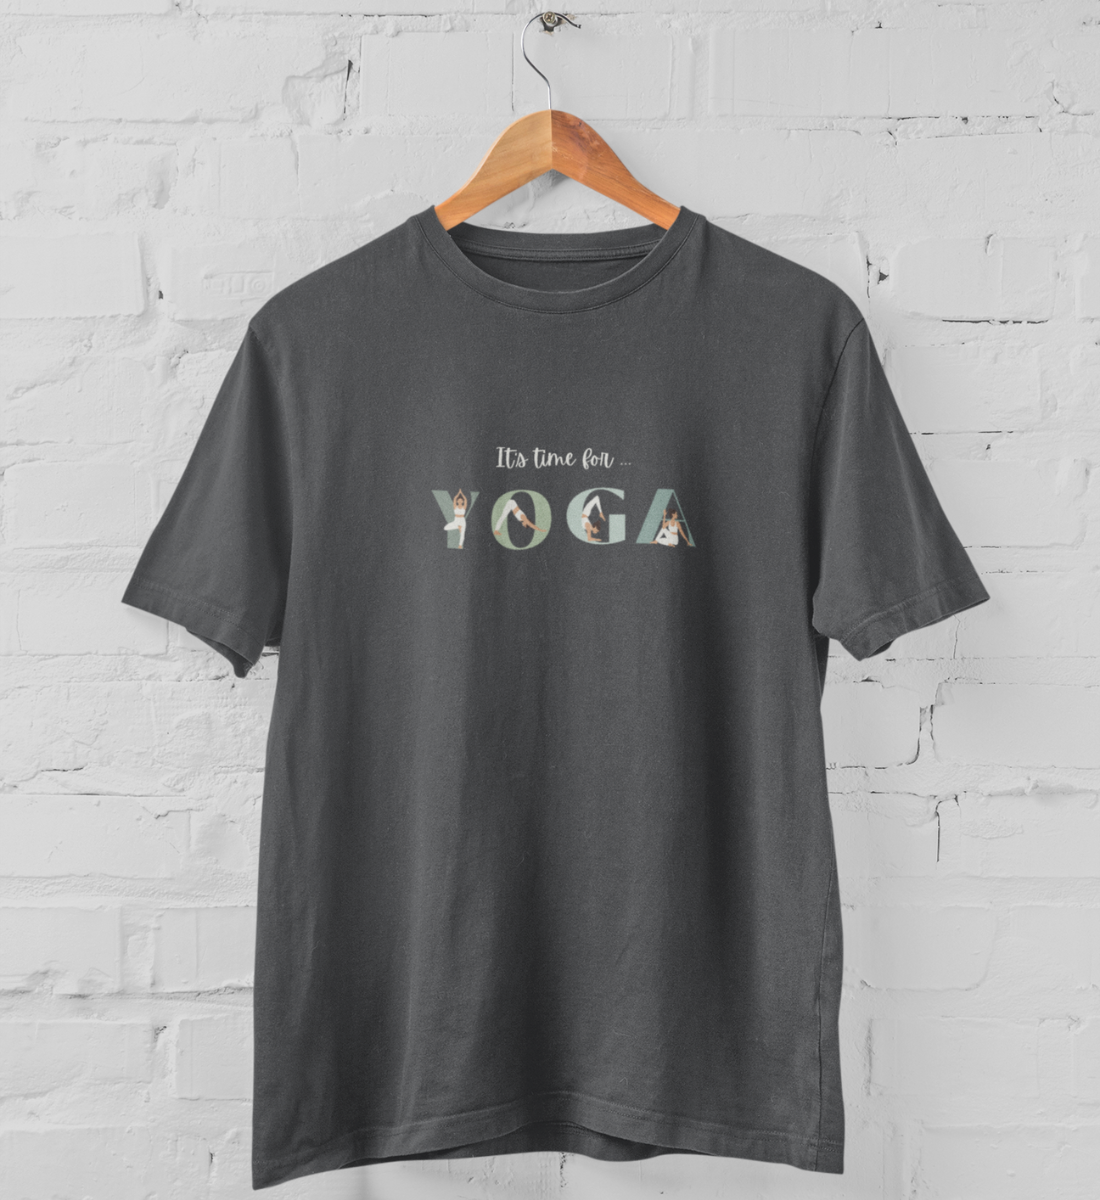 it's time for yoga l nachhaltiges t-shirt anthrazit l yoga kleidung bio-baumwolle l nachhaltig einkaufen dank veganer mode